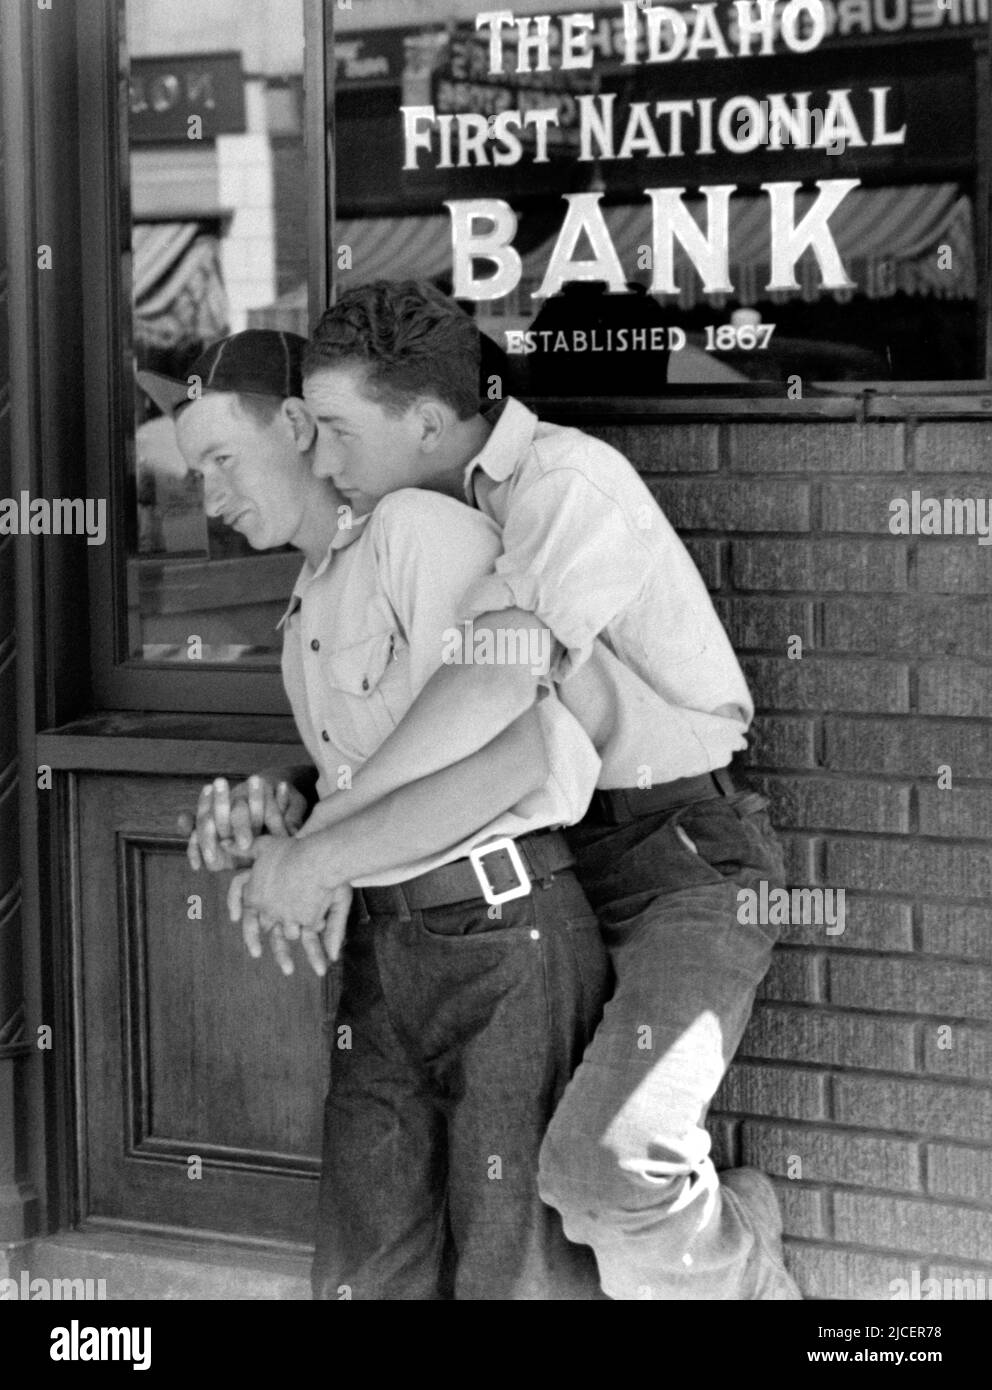 1941, Juni, CALDWELL, IDAHO, USA: Zwei JUNGEN FLIRTEN, in blauen Jeans-Hosen, umarmte wie sehr enge Freunde posieren und lächeln, lehnen sich am Eingang zu einem Bankbüro der IDAHO FIRST NATIONAL BANK of CALDWELL FILIALE. Foto von RUSSELL LEE ( 1903 - 1986 ), Mitarbeiter der United States Agricolture Farm Security Administration oder Office of war Information inländischen Fotoeinheiten, als ein Werk der US-Bundesregierung. - LIEBE - AMORE - STATI UNITI AMERICA - bellezza - Schönheit - LGBT - HOMOSEXUELL - STOLZ - JUGEND - Gioventù - Portrait - ritratto - omosessuale - Homosexualität Stockfoto